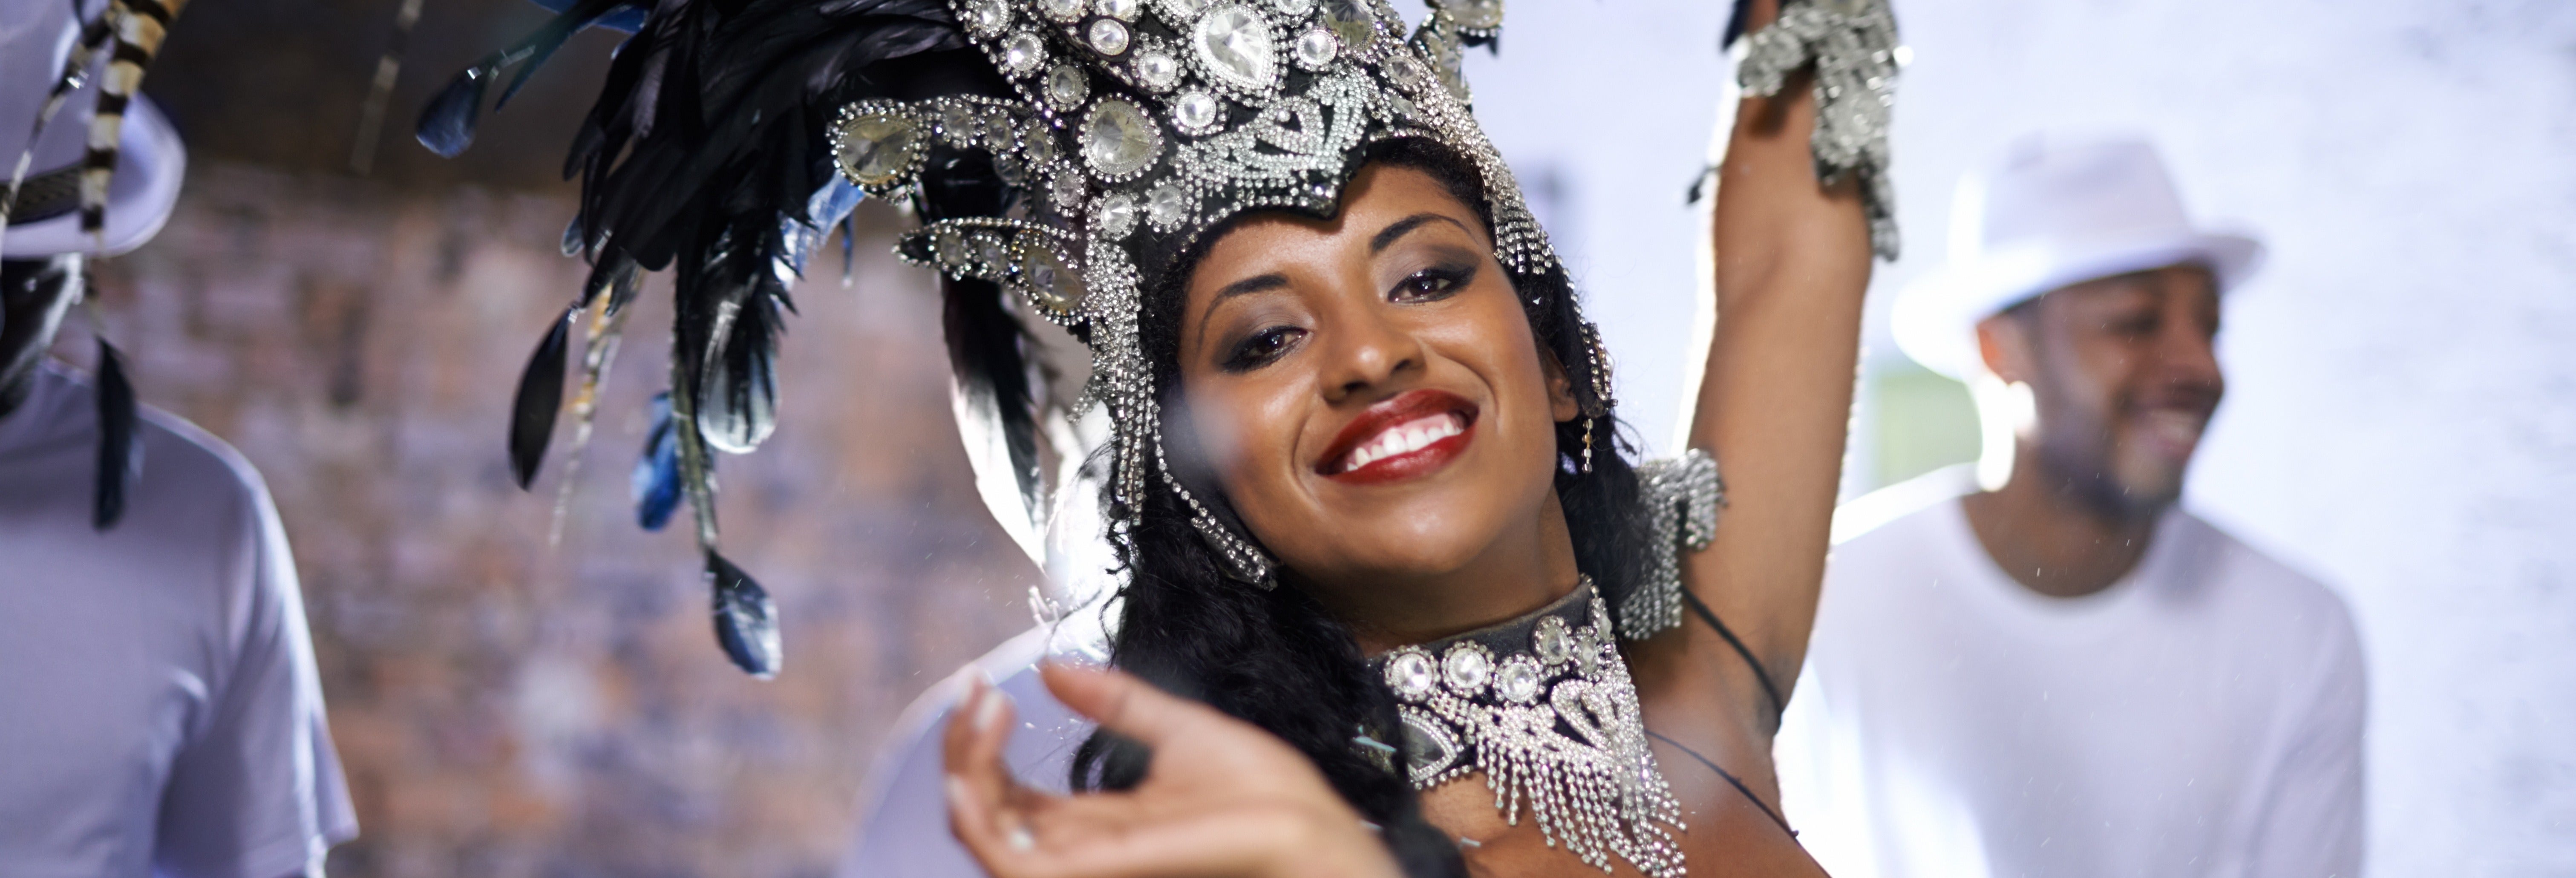 Rio Carnival Expericence Rio De Janeiro